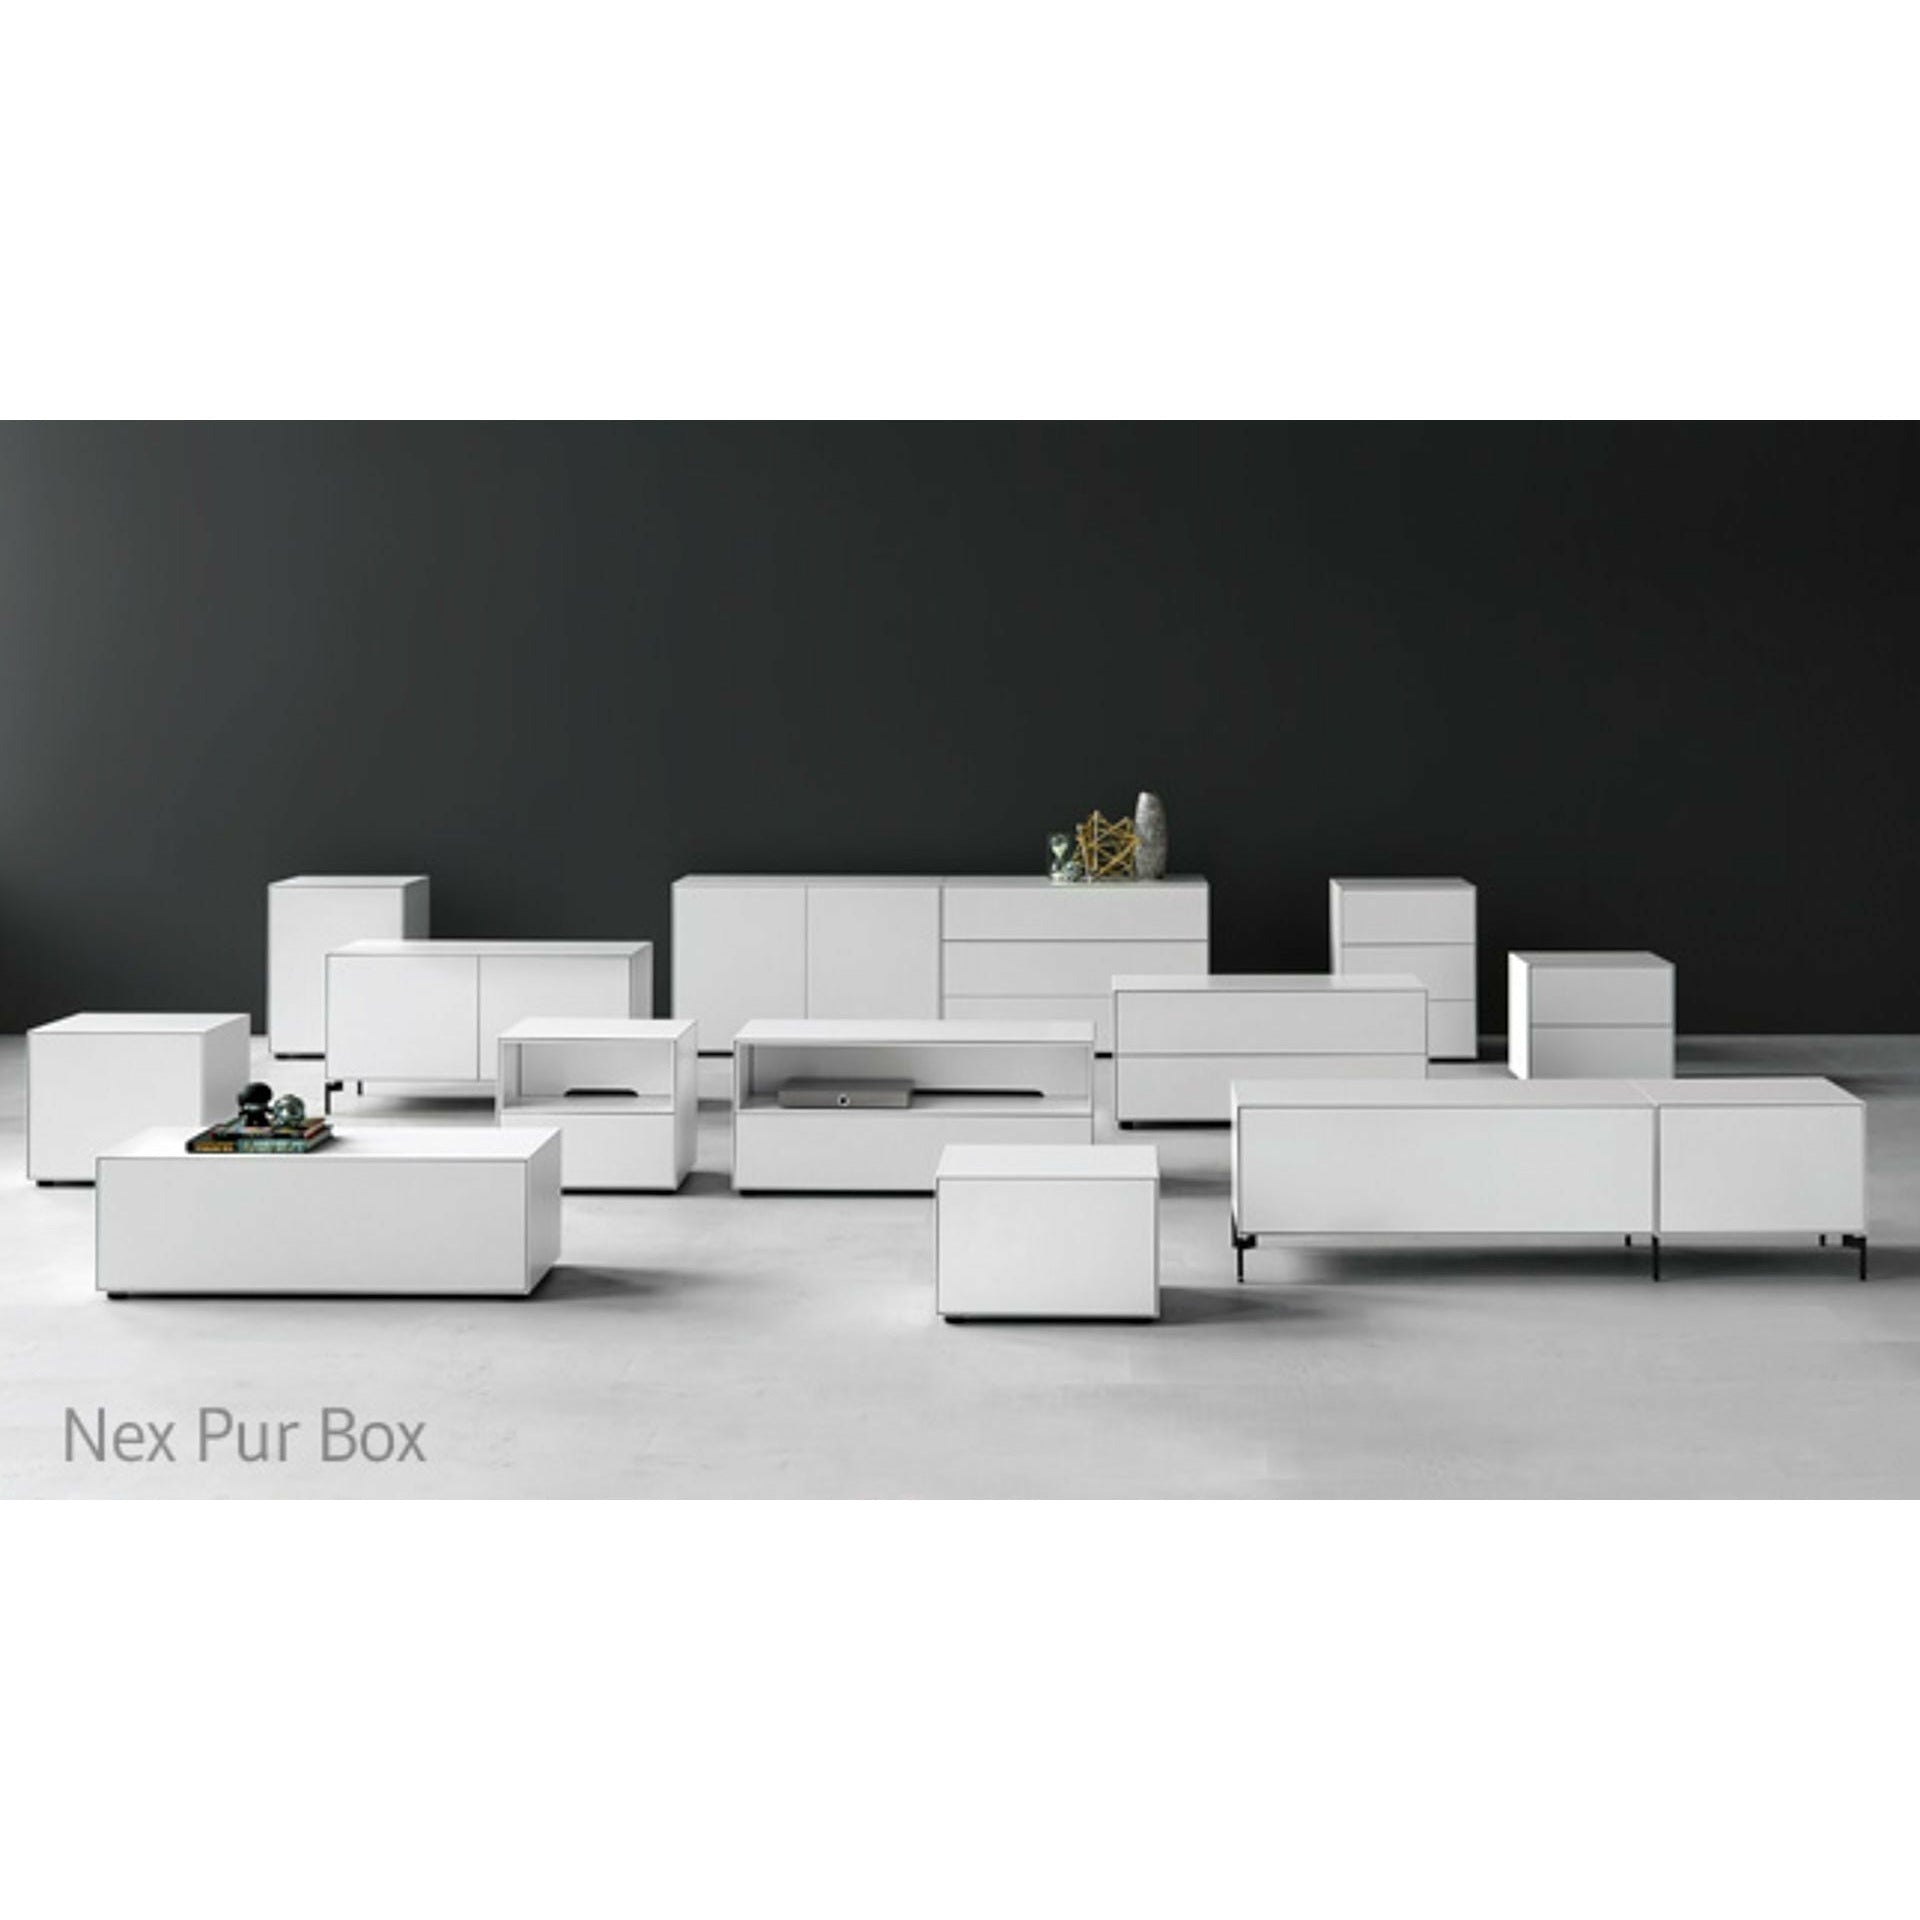 Piure NEX PUR BOX Skuffe/Door HX W 50x180 cm, 2 hylder/1 hylde